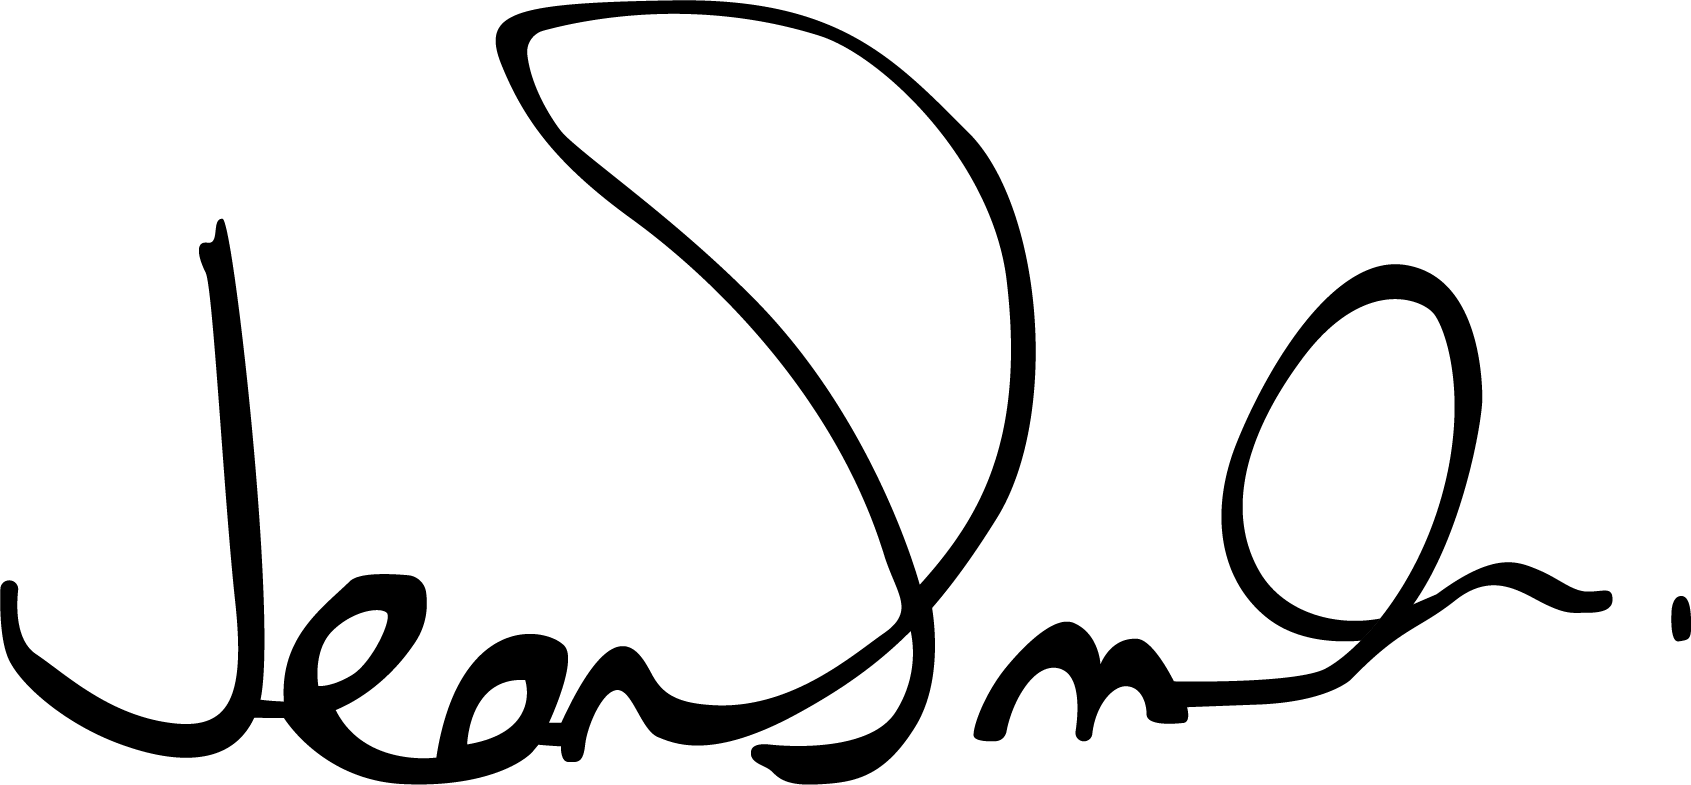 Jean Smith signature